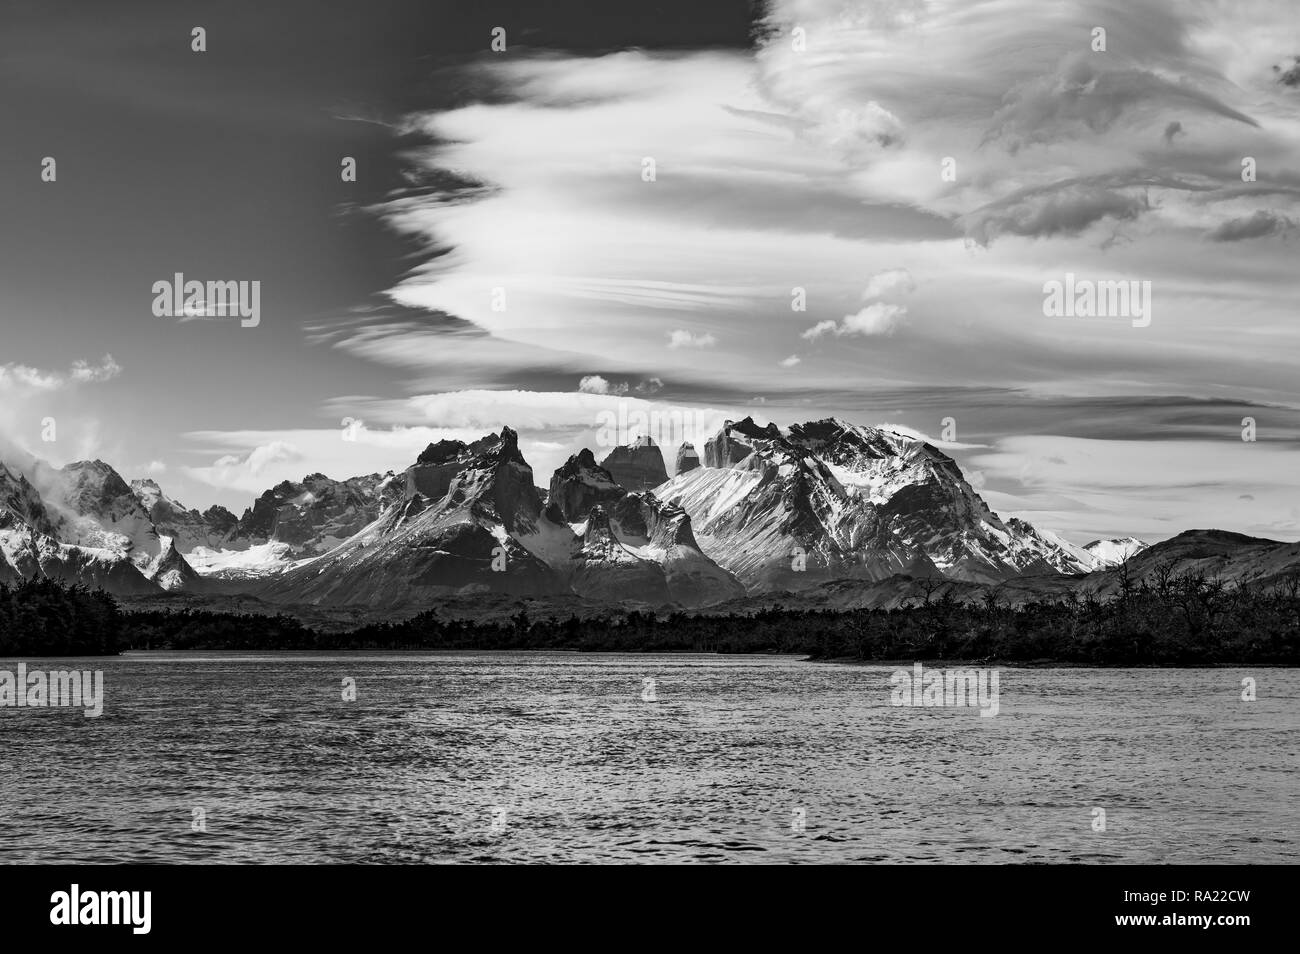 Photographie en noir et blanc du massif Torres del Paine avec les Cuernos del Paine au premier plan et un ciel dramatique, en Patagonie, au Chili. Banque D'Images